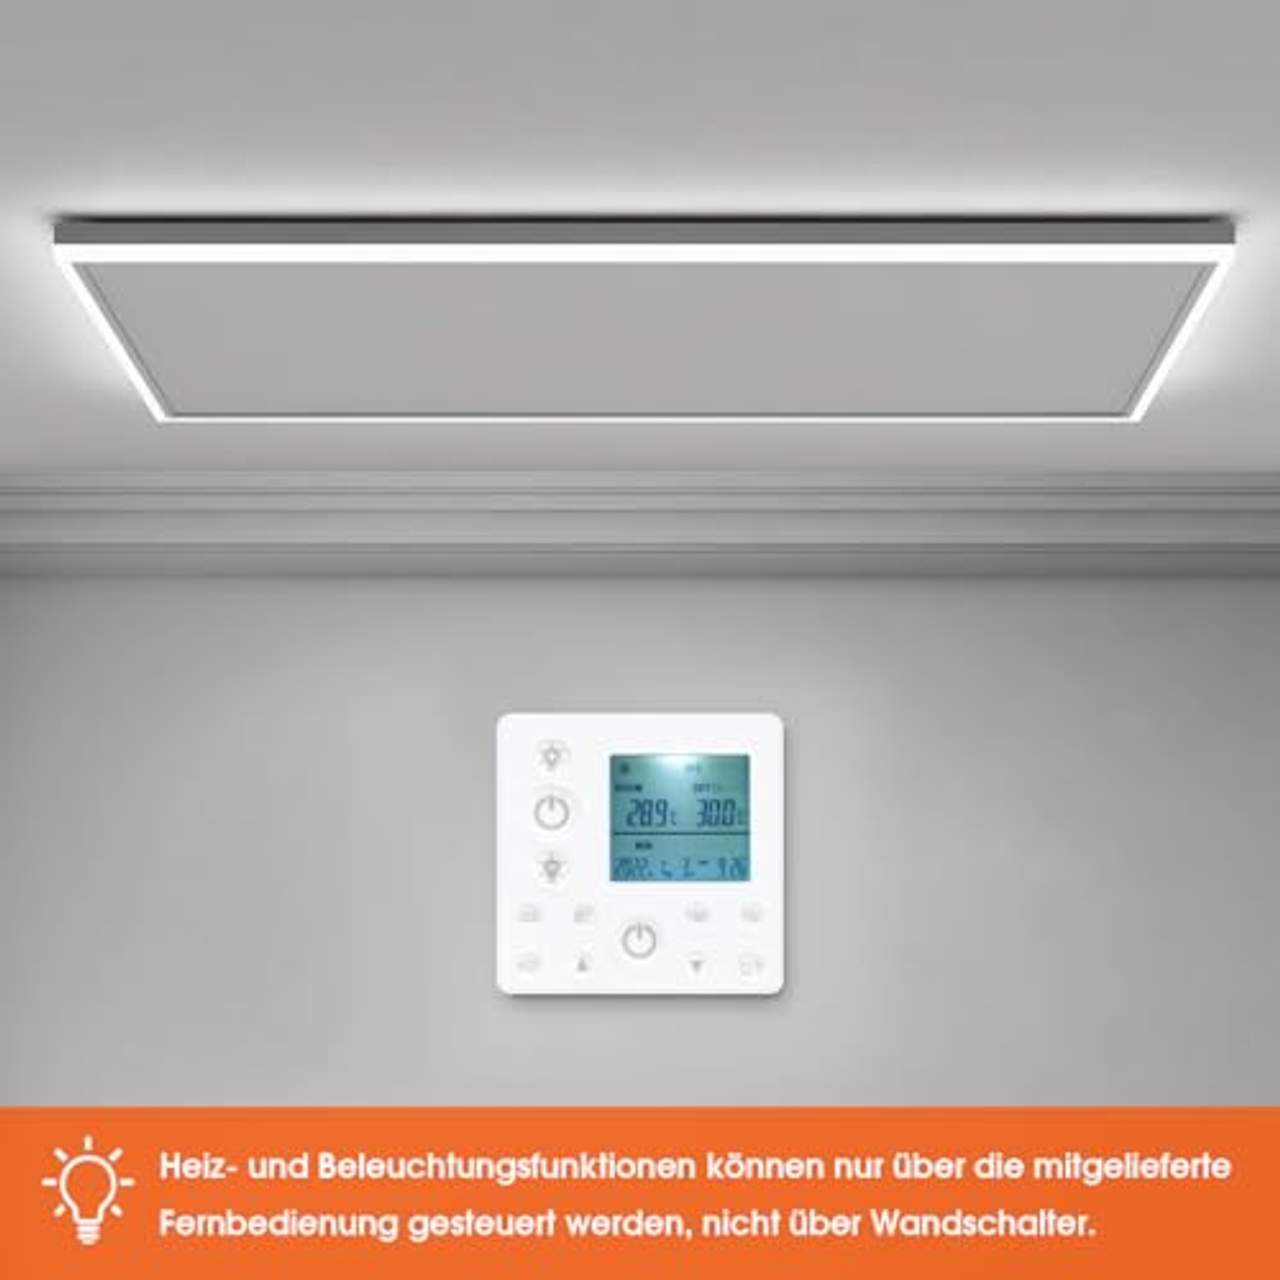 byecold Infrarotheizung mit Thermostat Deckenheizung 600W LED Beleuchtung Licht Kaltweiß